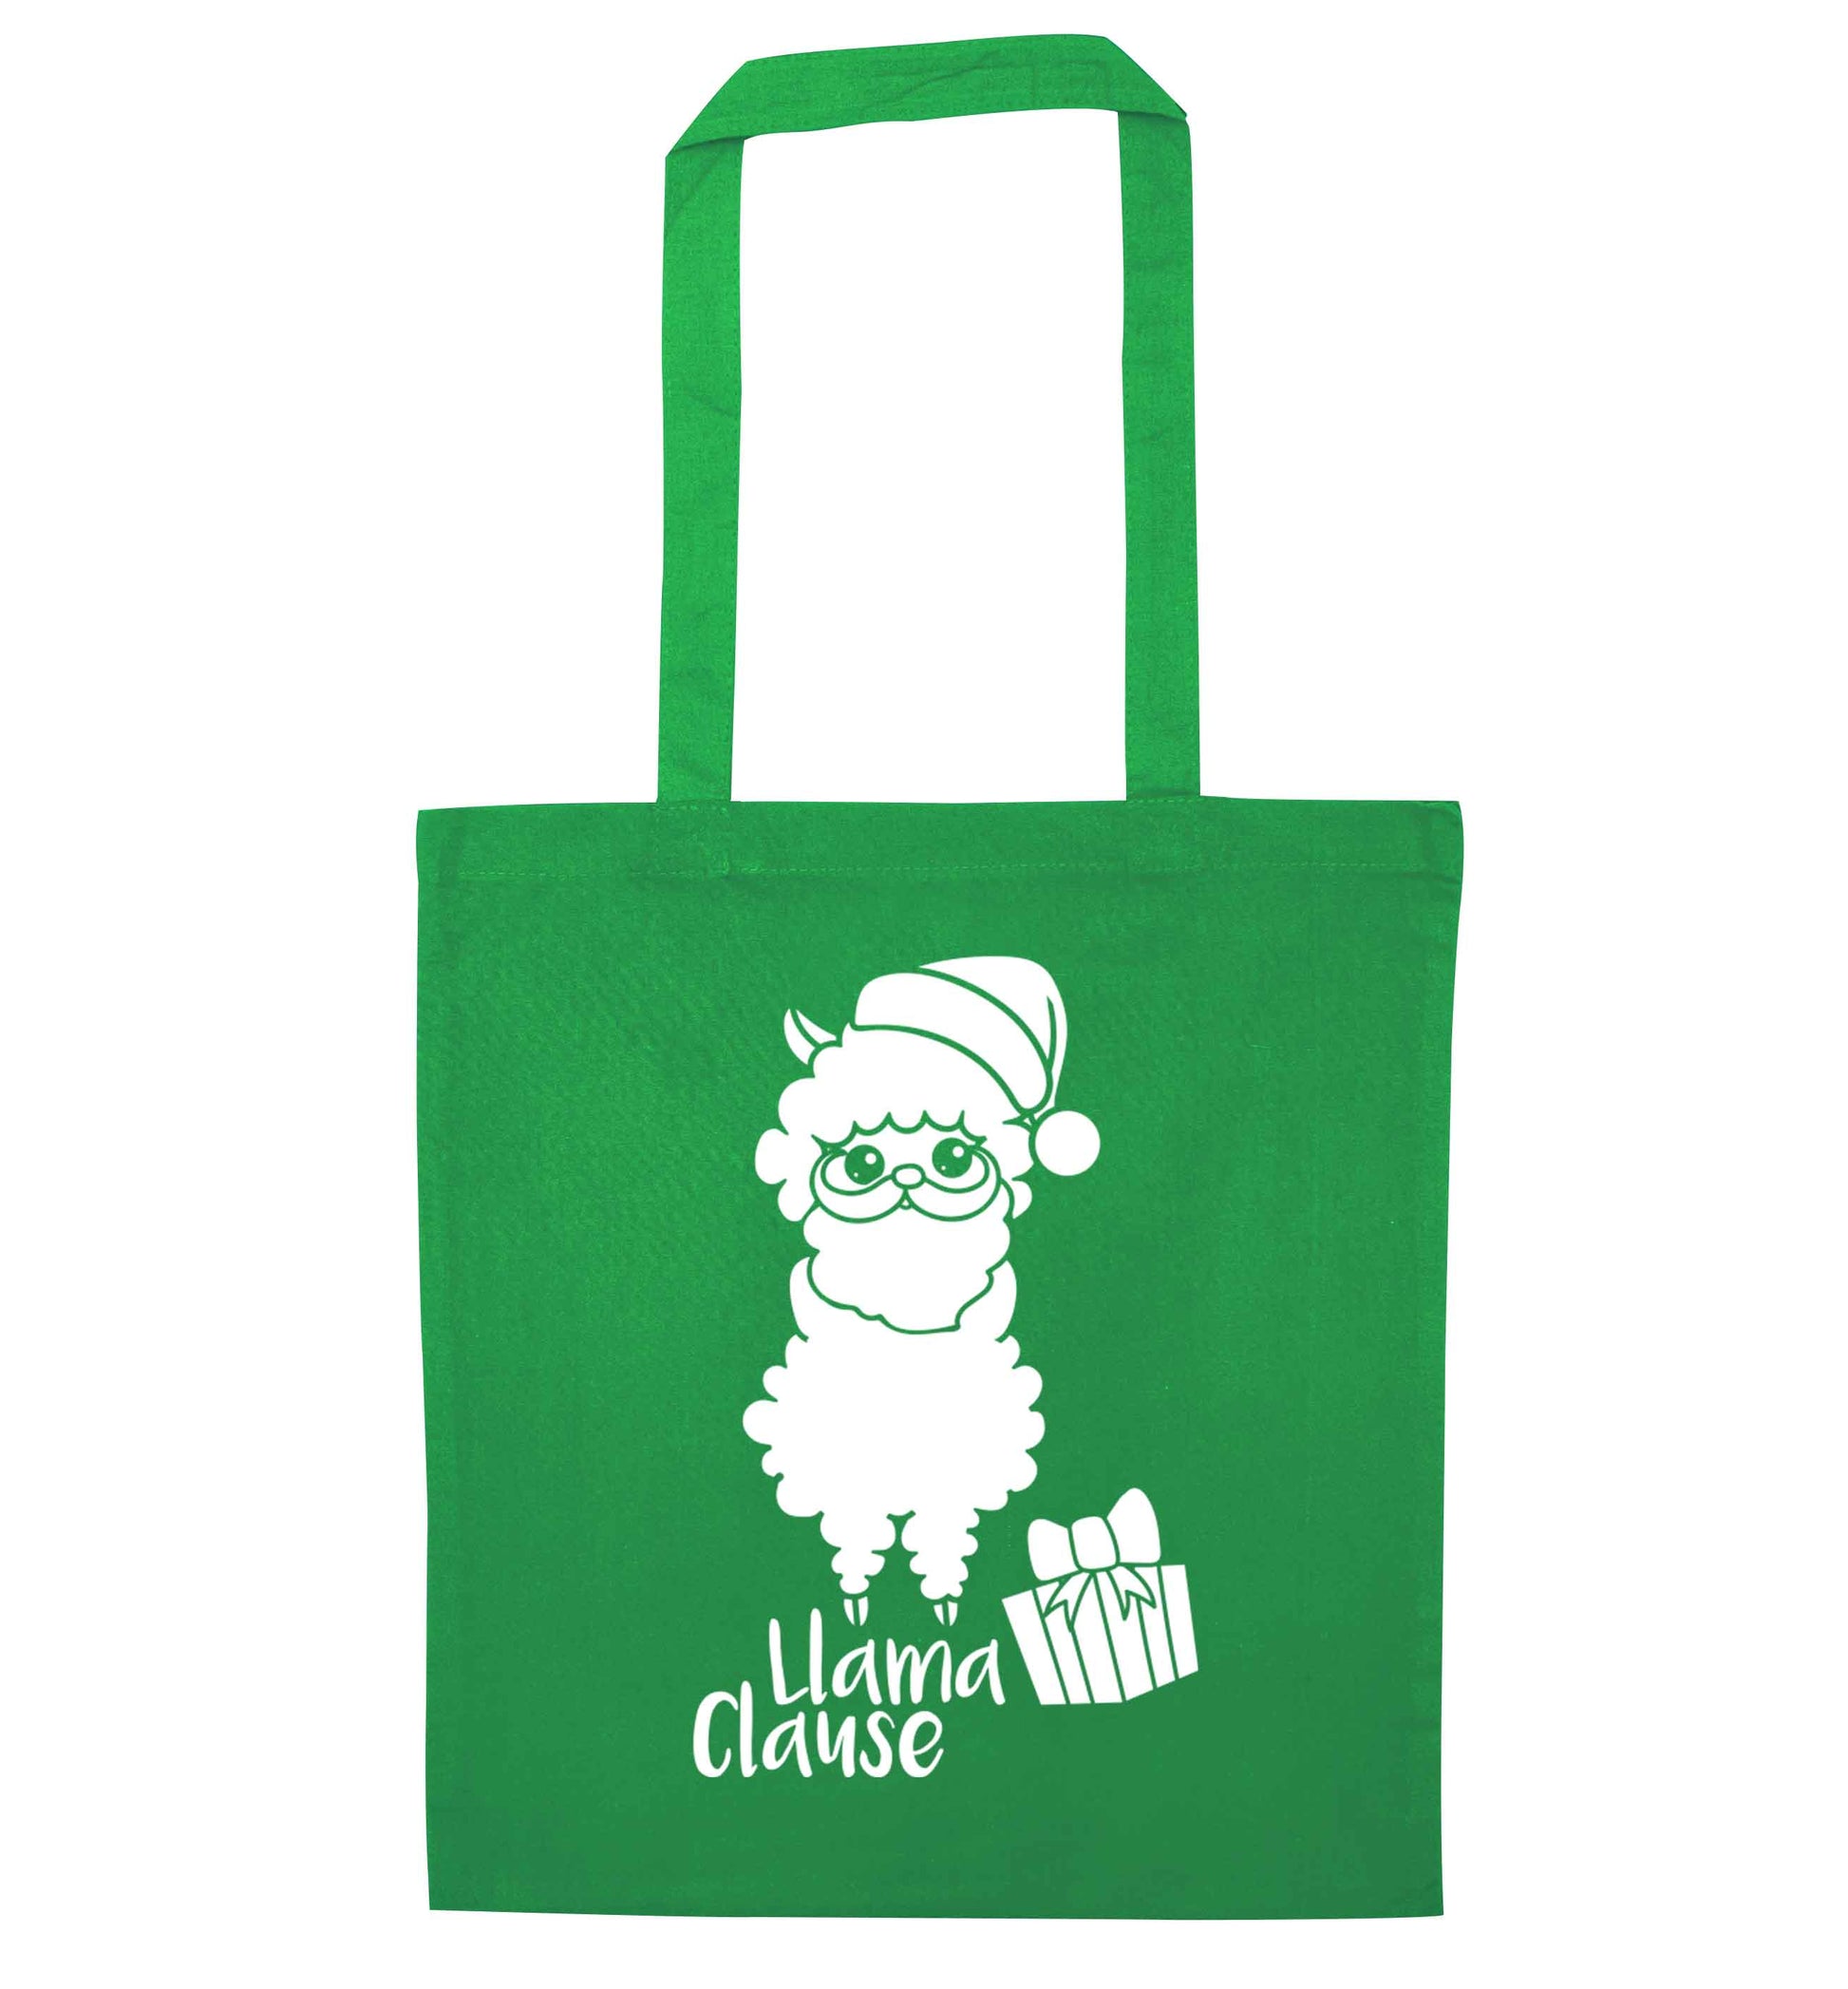 Llama Clause green tote bag